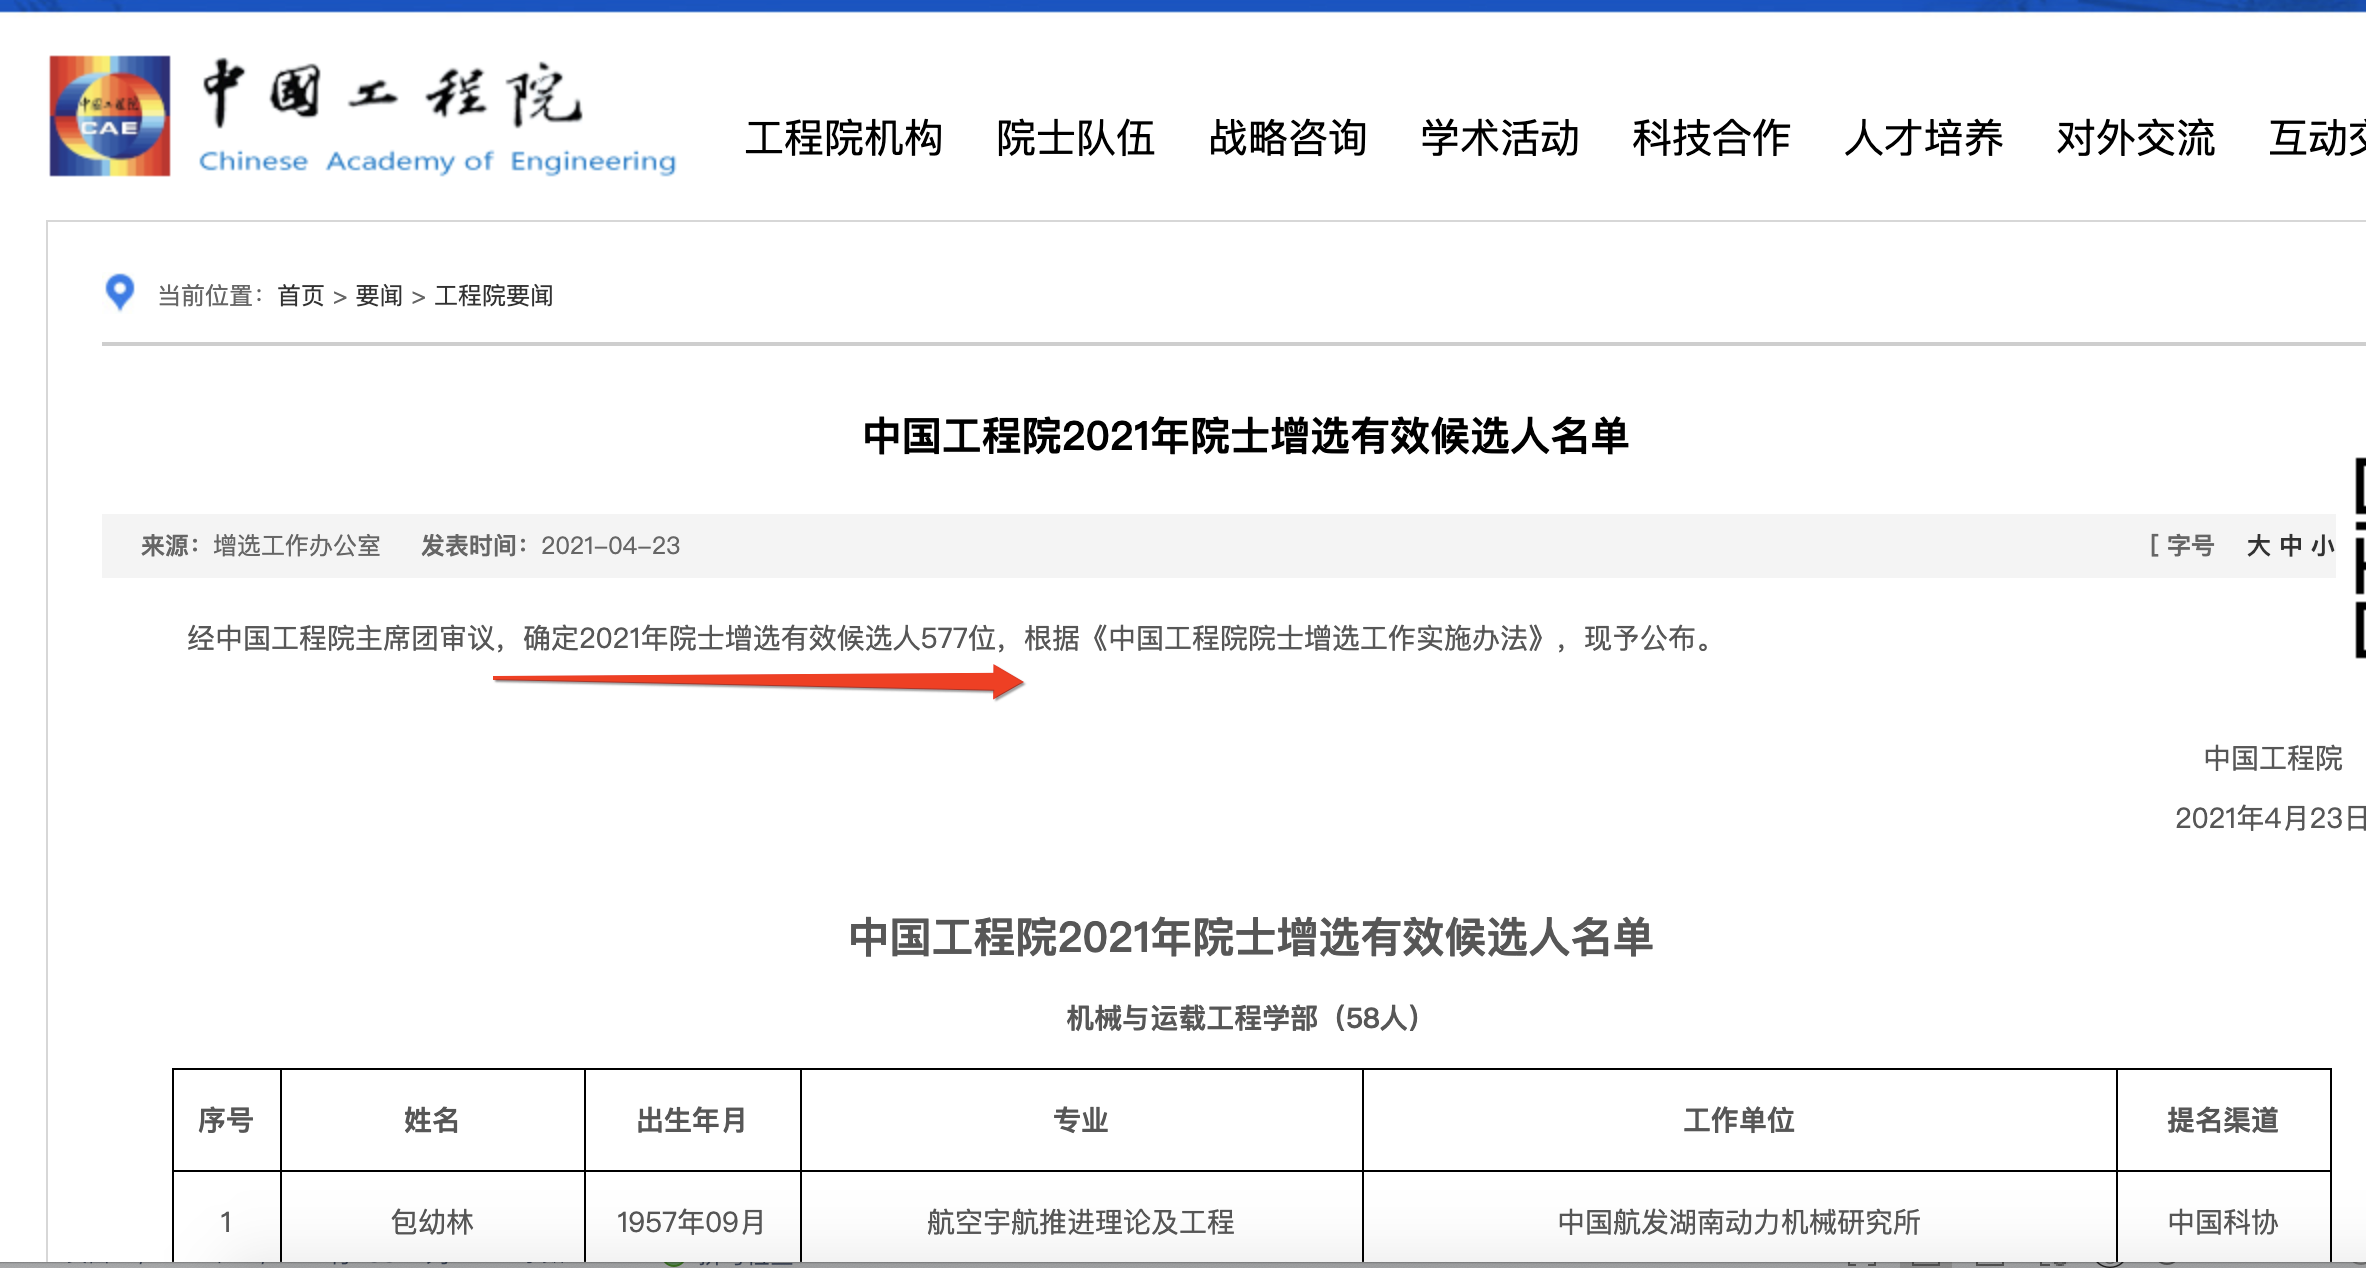 中国<font color="red">工程</font>院2021年院士增选577位有效候选人名单公布，其中医药卫生部84位有效候选人